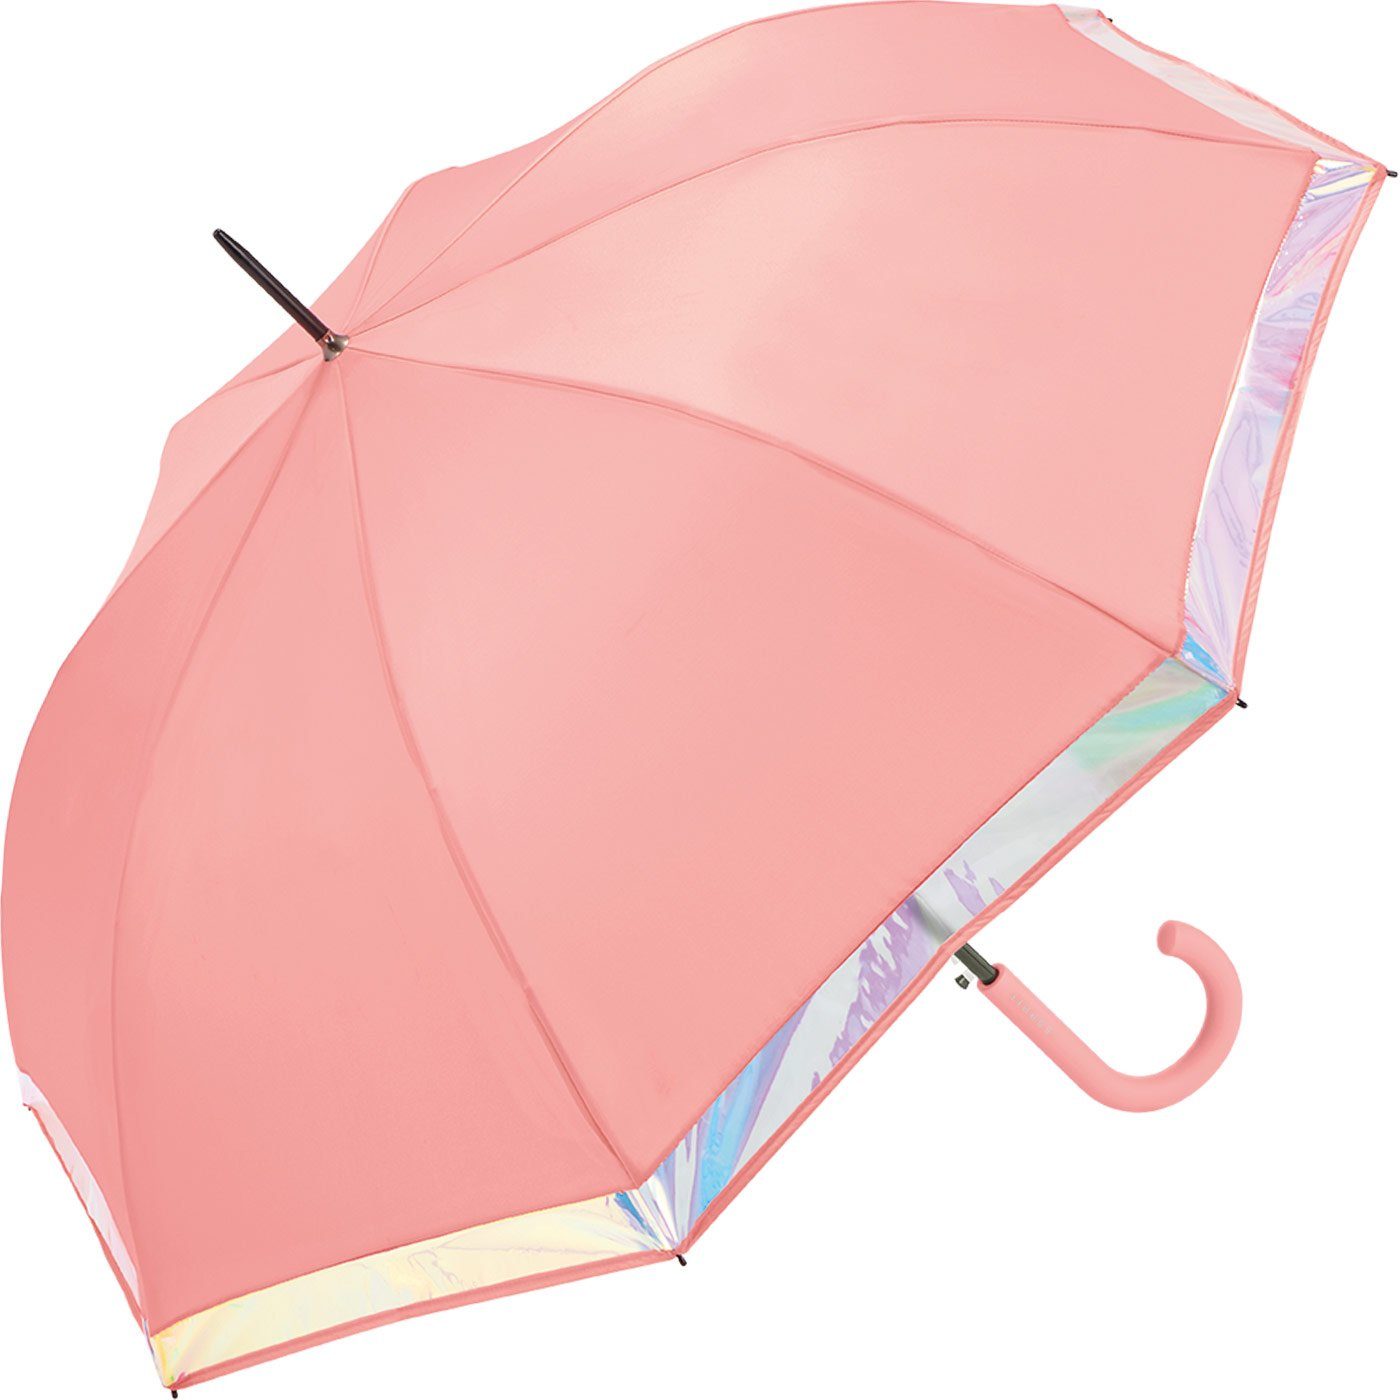 und Damen Border, Shiny mit Regenschirm Automatik Langregenschirm groß Esprit stabil, lachs schimmernder Borte mit